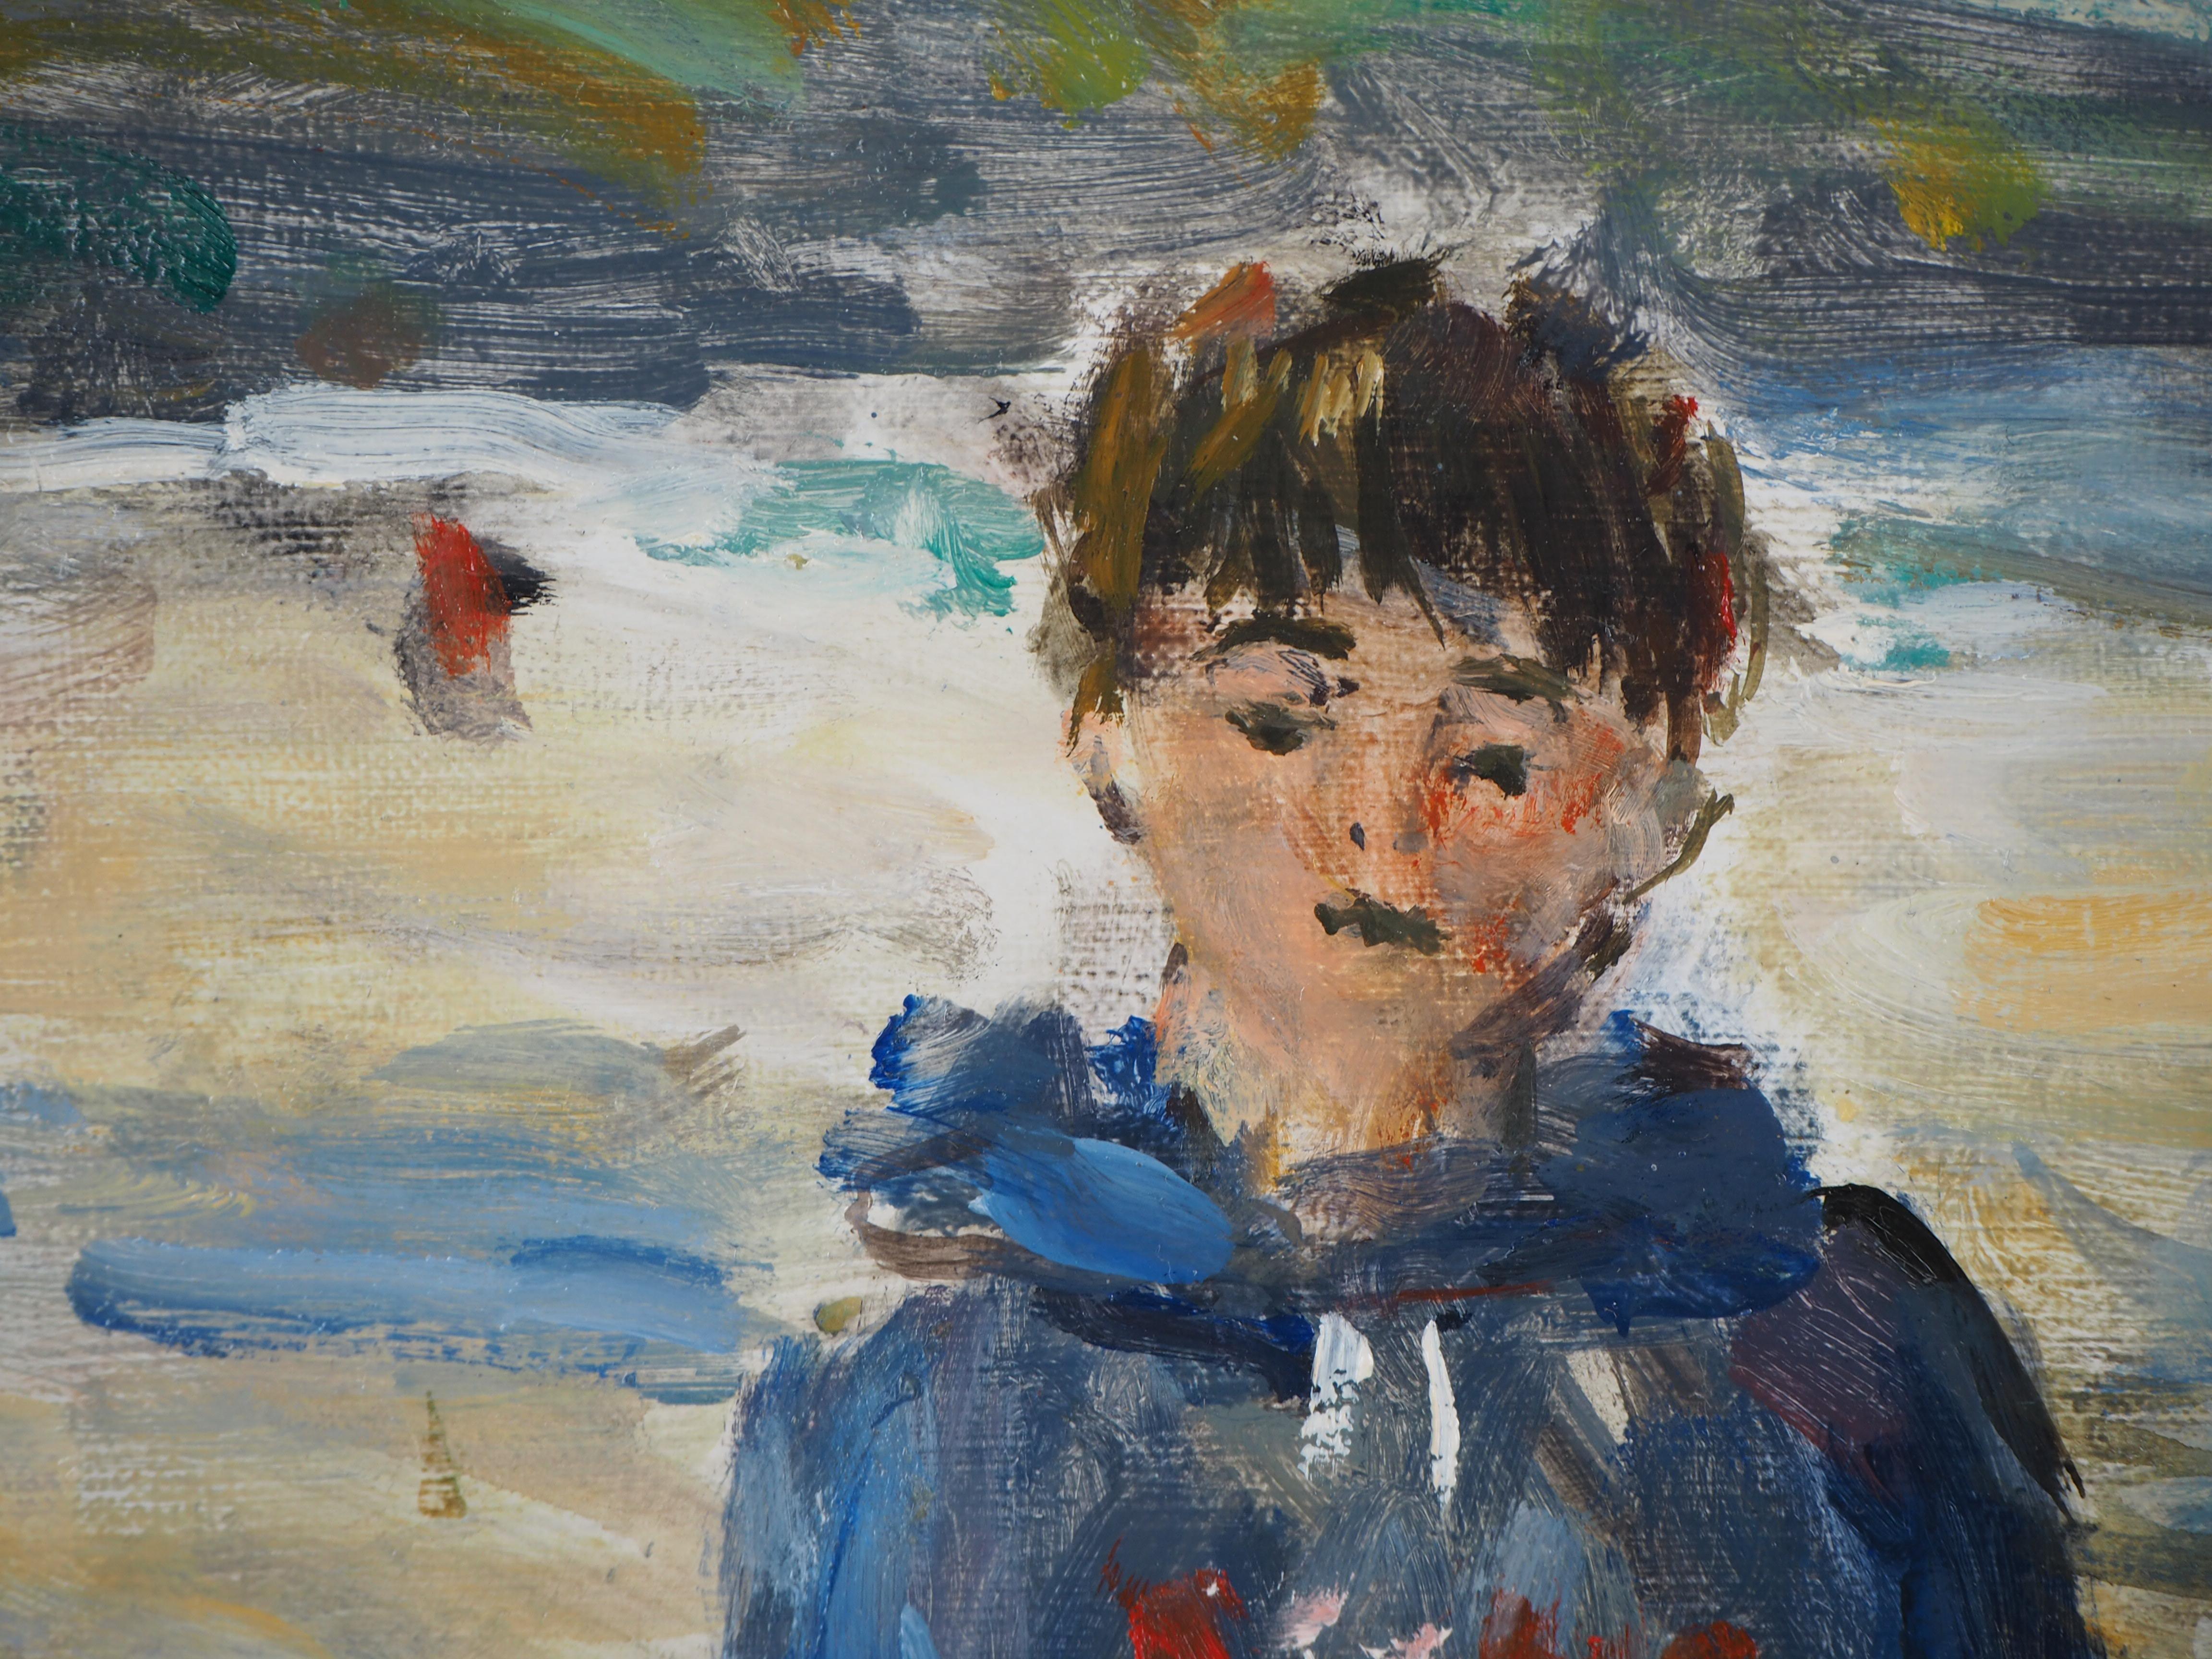 Jean-Jacques RENÉ
Normandie : Un garçon sur la plage

Peinture à l'huile sur toile
Hansigné
46 x 55 cm (c. 18.1 x 21.7 inch)

Excellent état